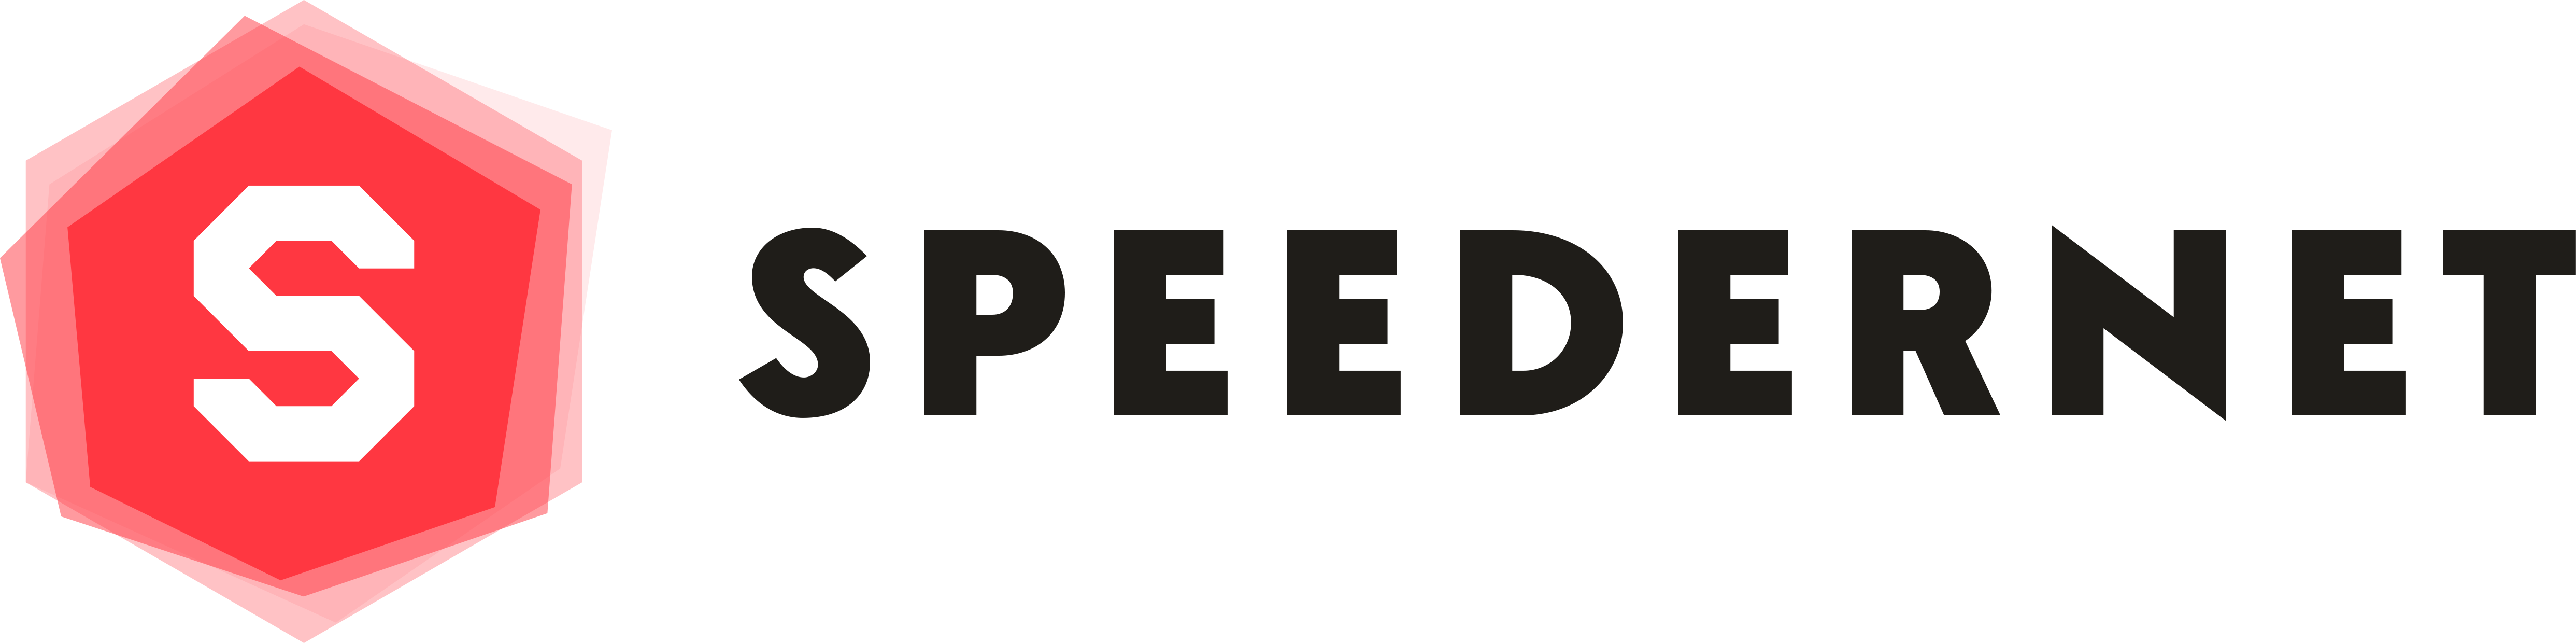 Logo de Speedernet